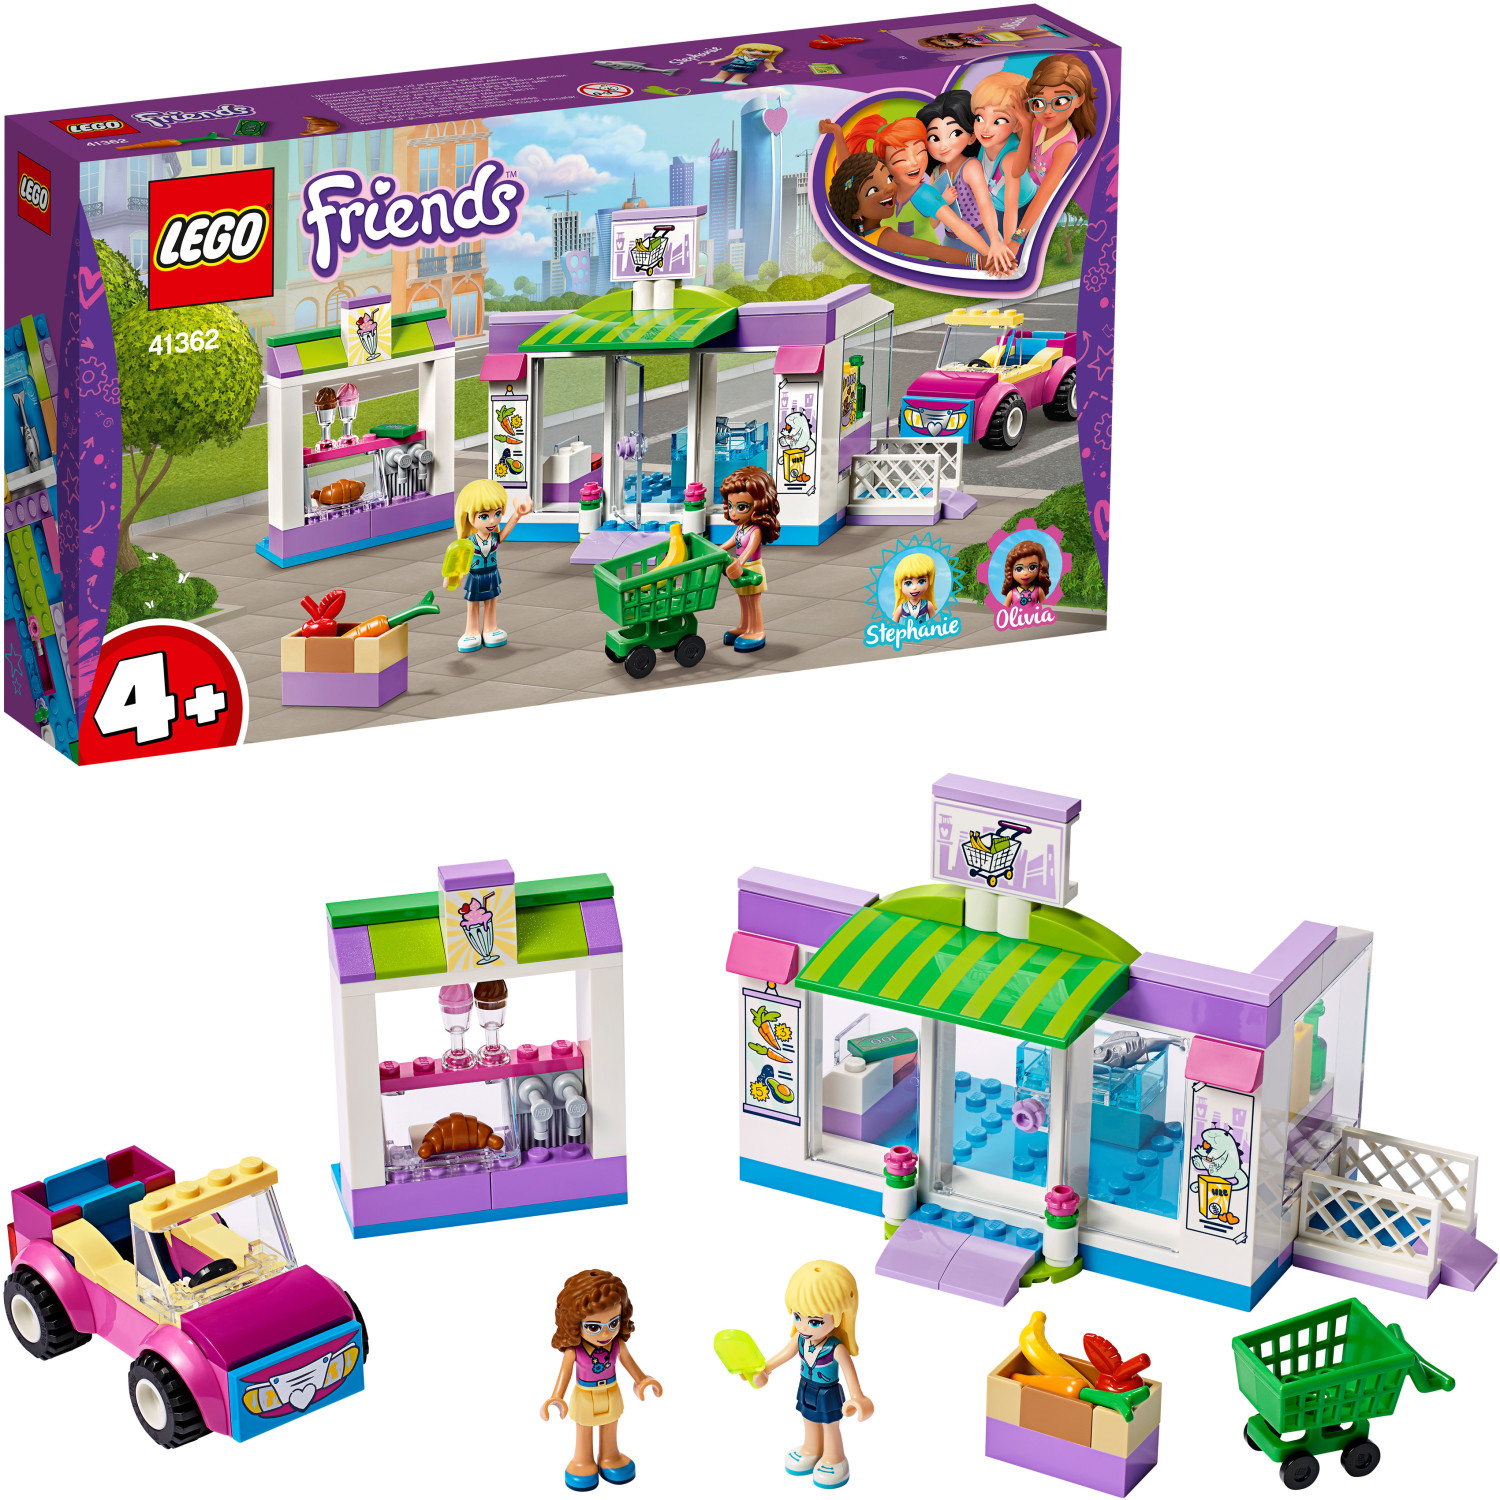 Heartlake | Friends Supermarkt City LEGO bei von 28,90 ab (41362) € Preisvergleich -